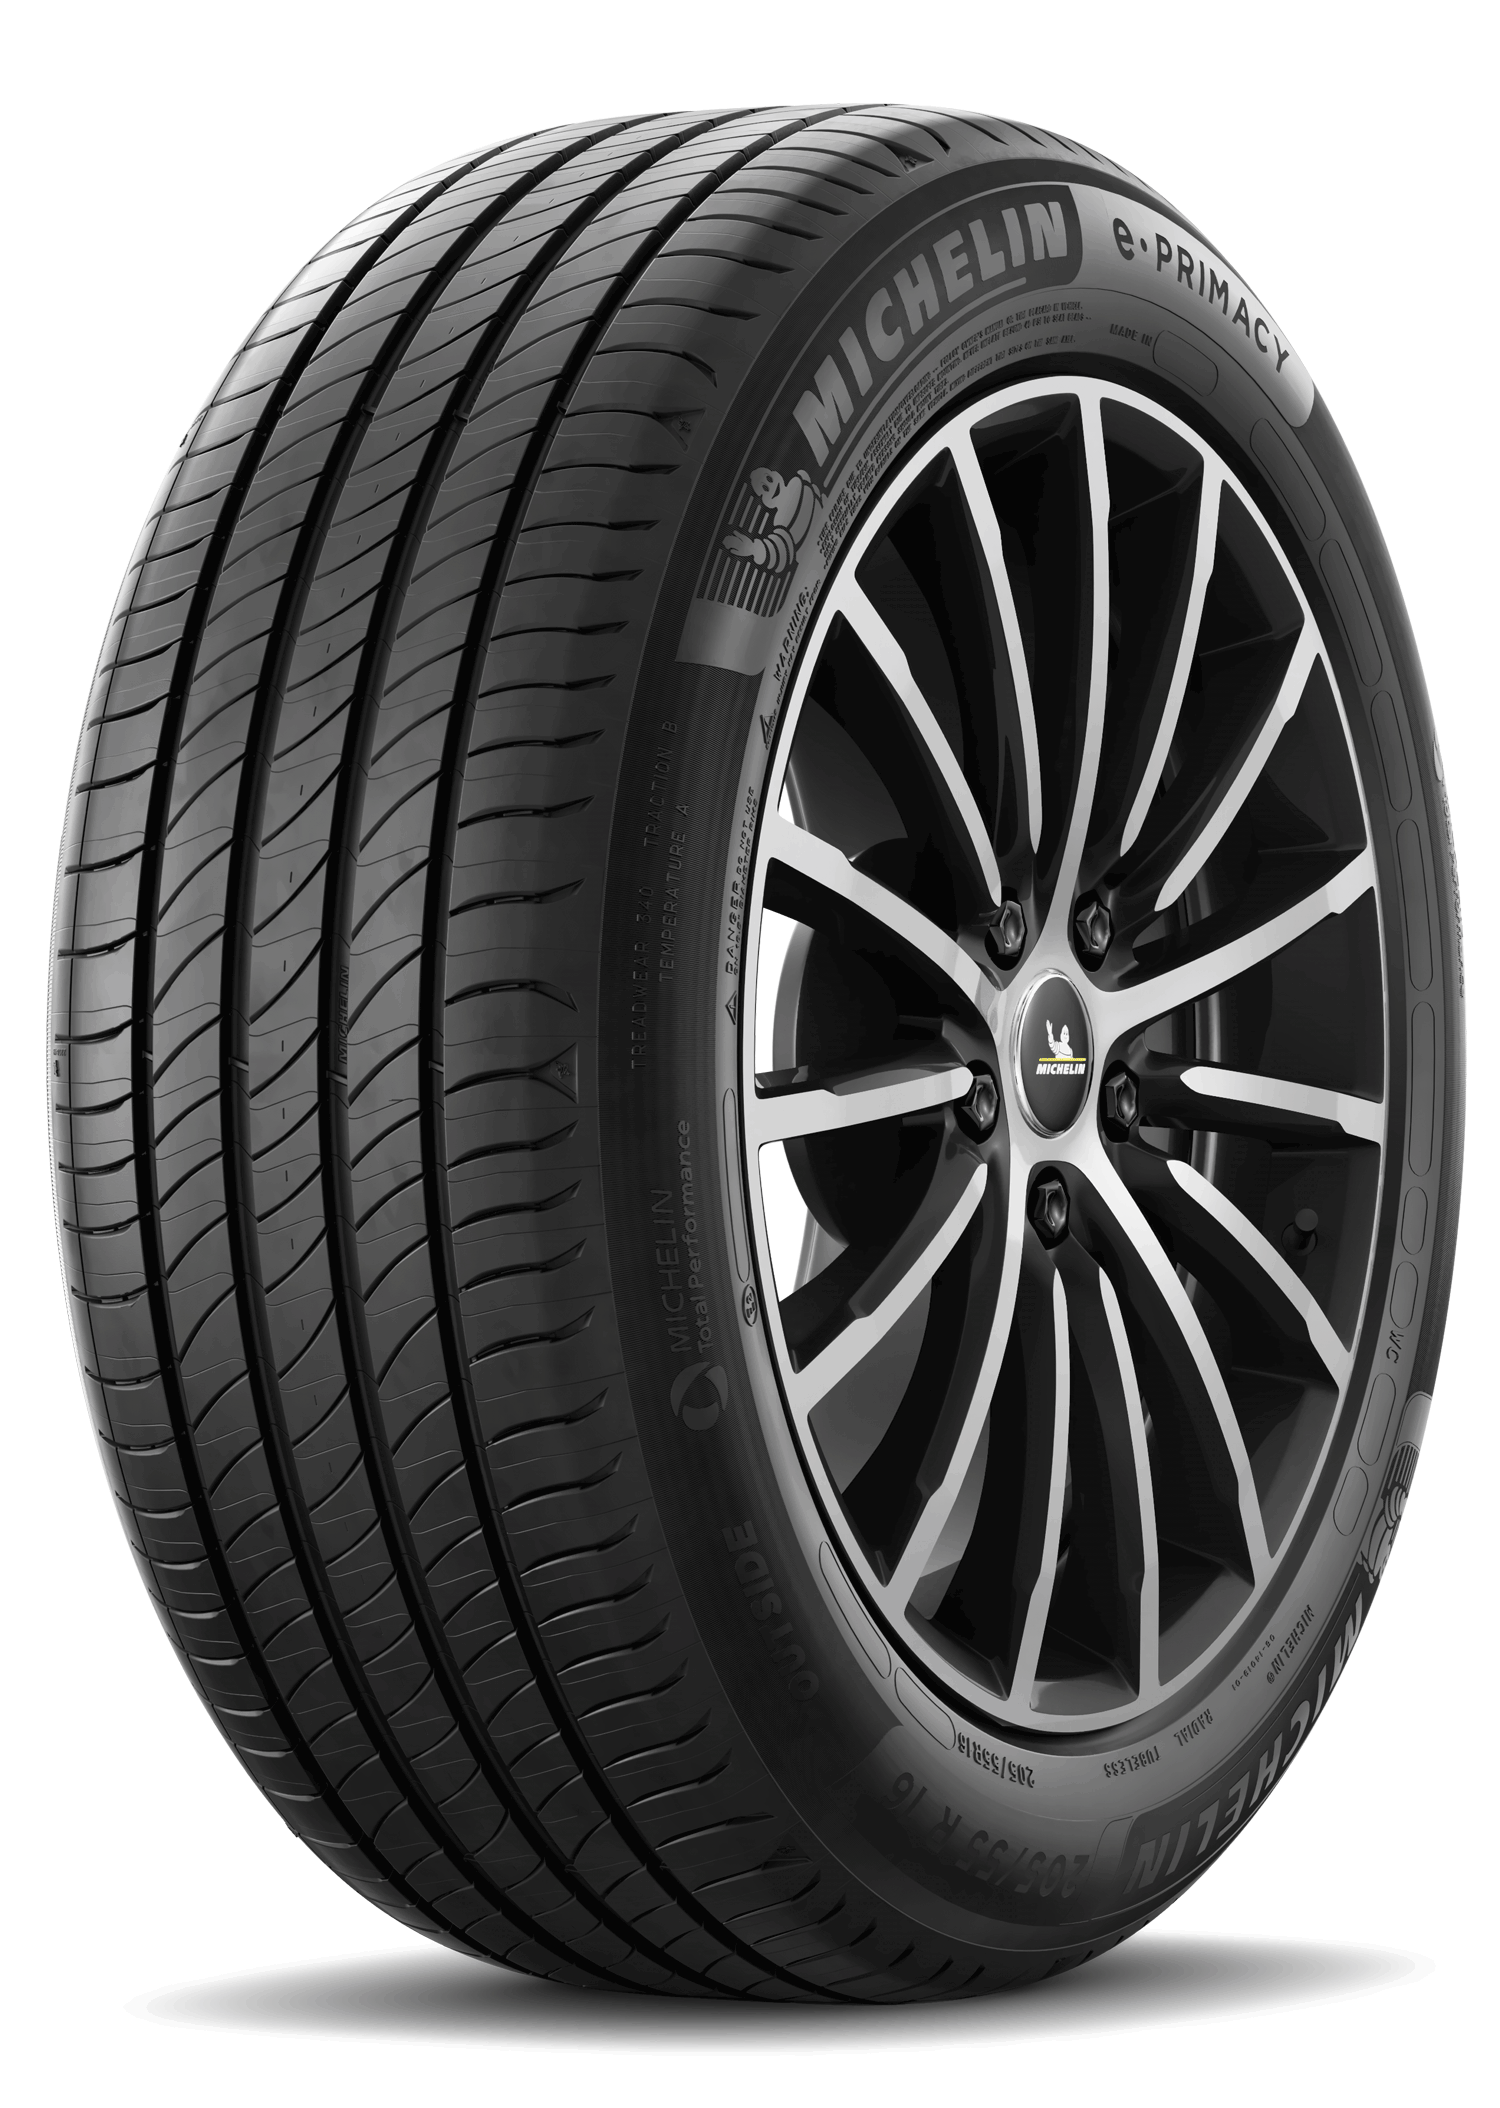 Gomme Nuove Michelin 205/55 R17 95V E PRIMACY XL pneumatici nuovi Estivo